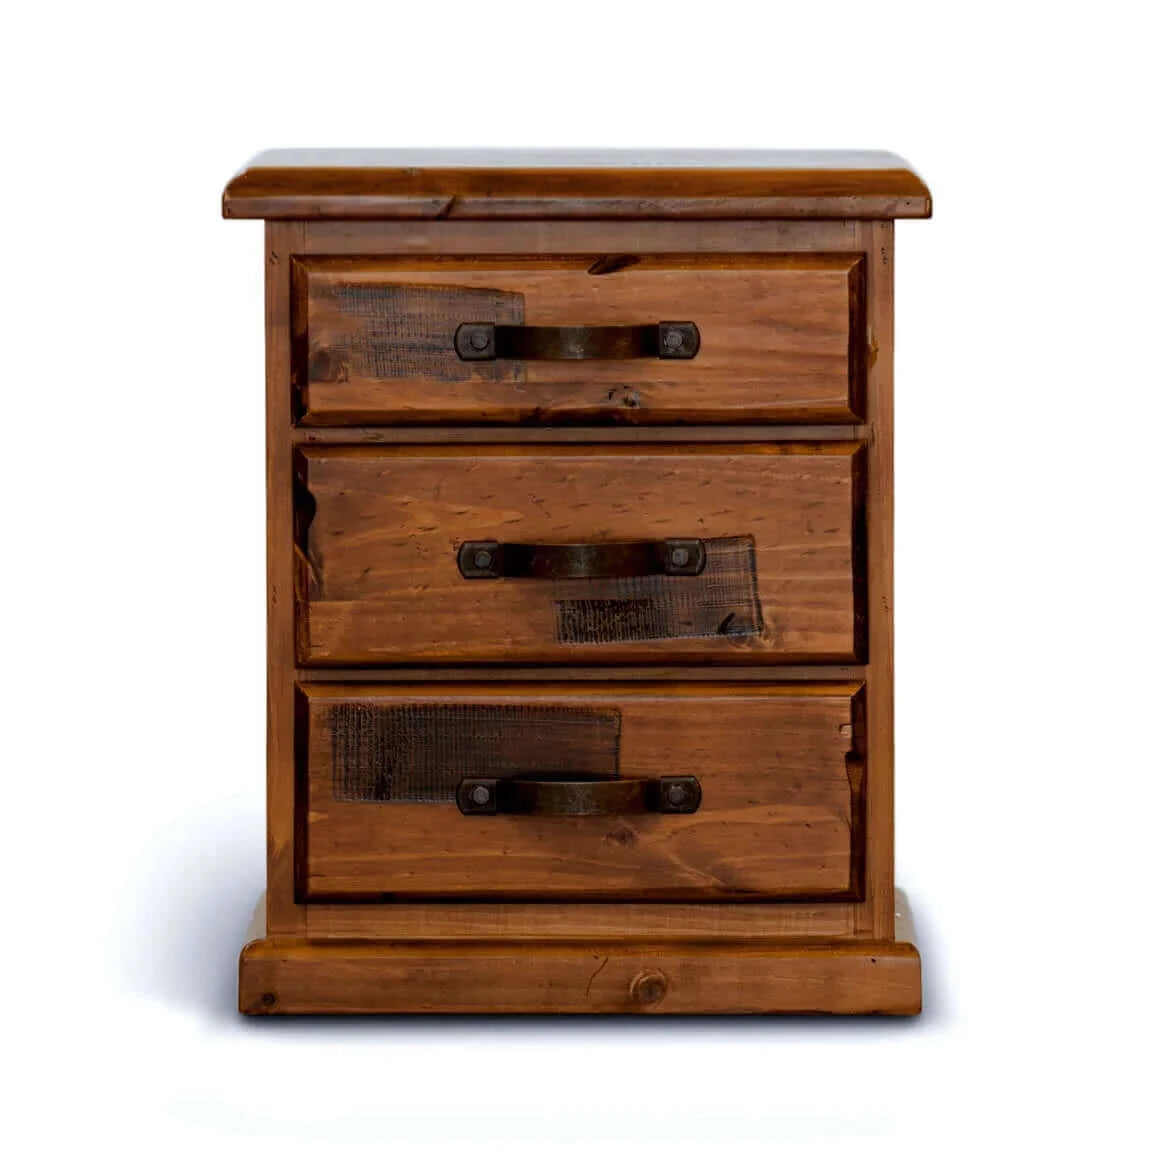 Buy umber bedside tables 3 drawers storage cabinet shelf side end table - dark brown - upinteriors-Upinteriors